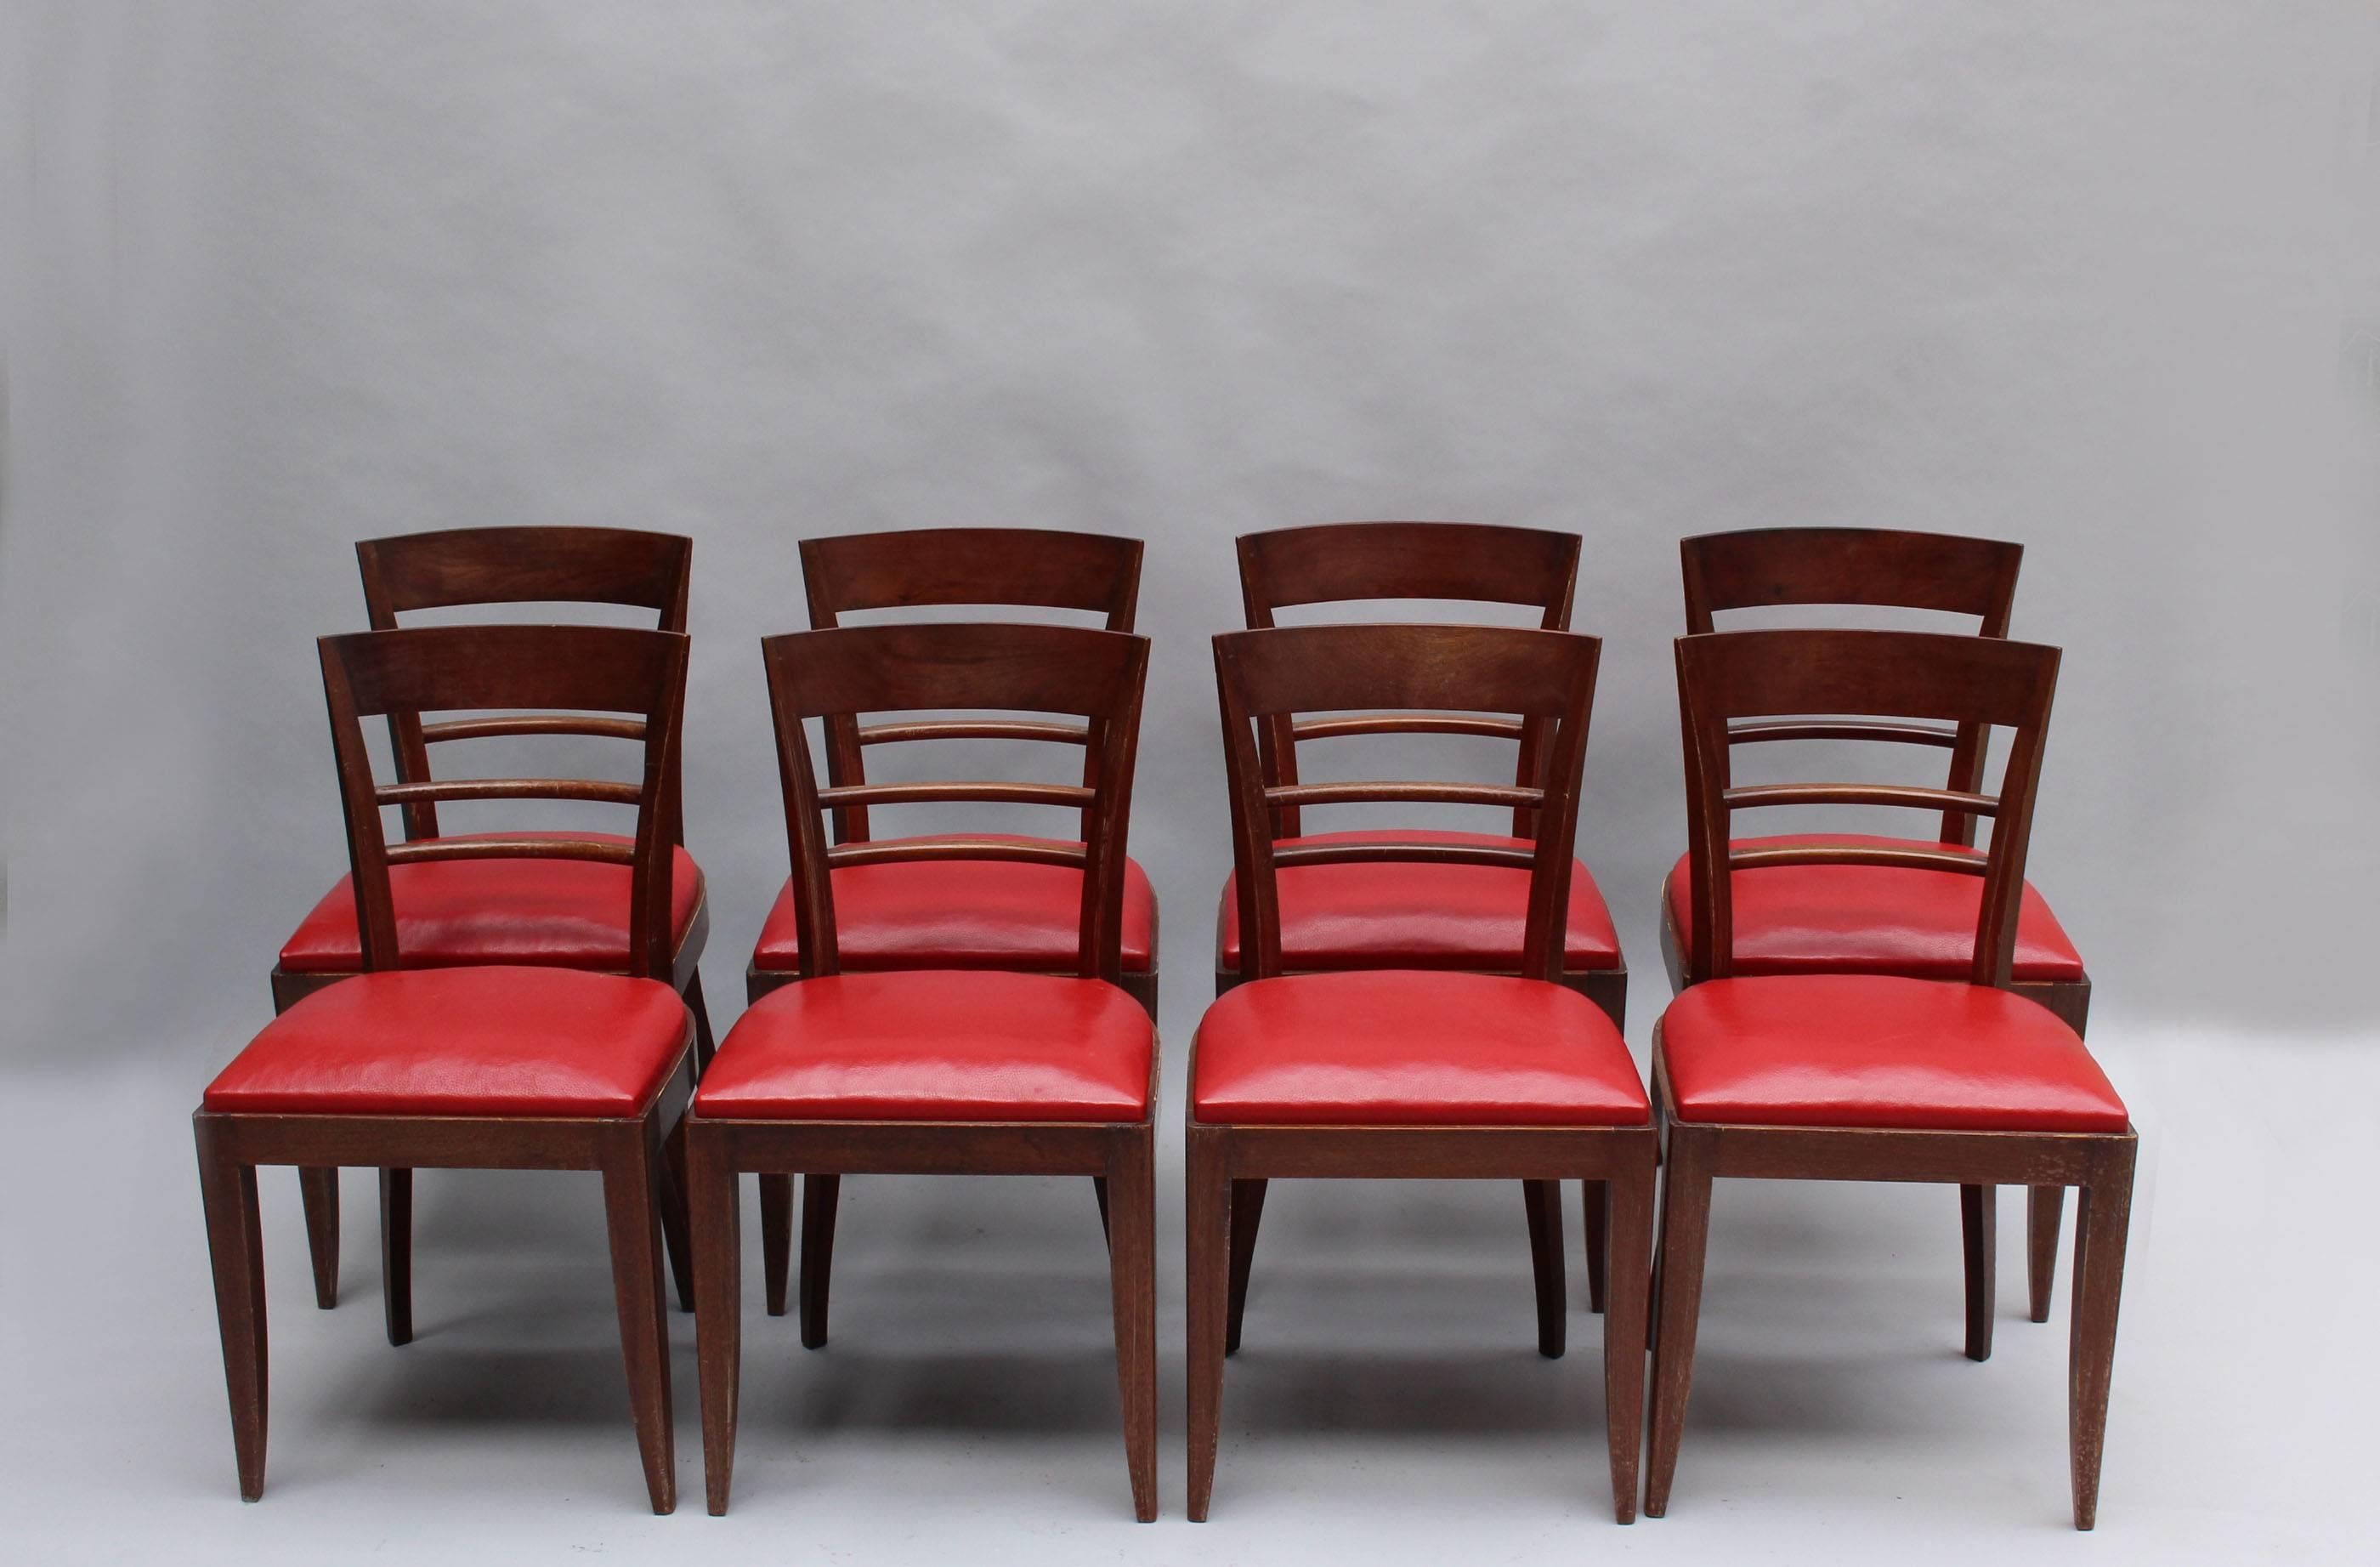 Ensemble de dix chaises de salle à manger en acajou de style Art Déco français (8 chaises latérales + 2 chaises à accoudoirs)
Dimensions :
Côté H 32